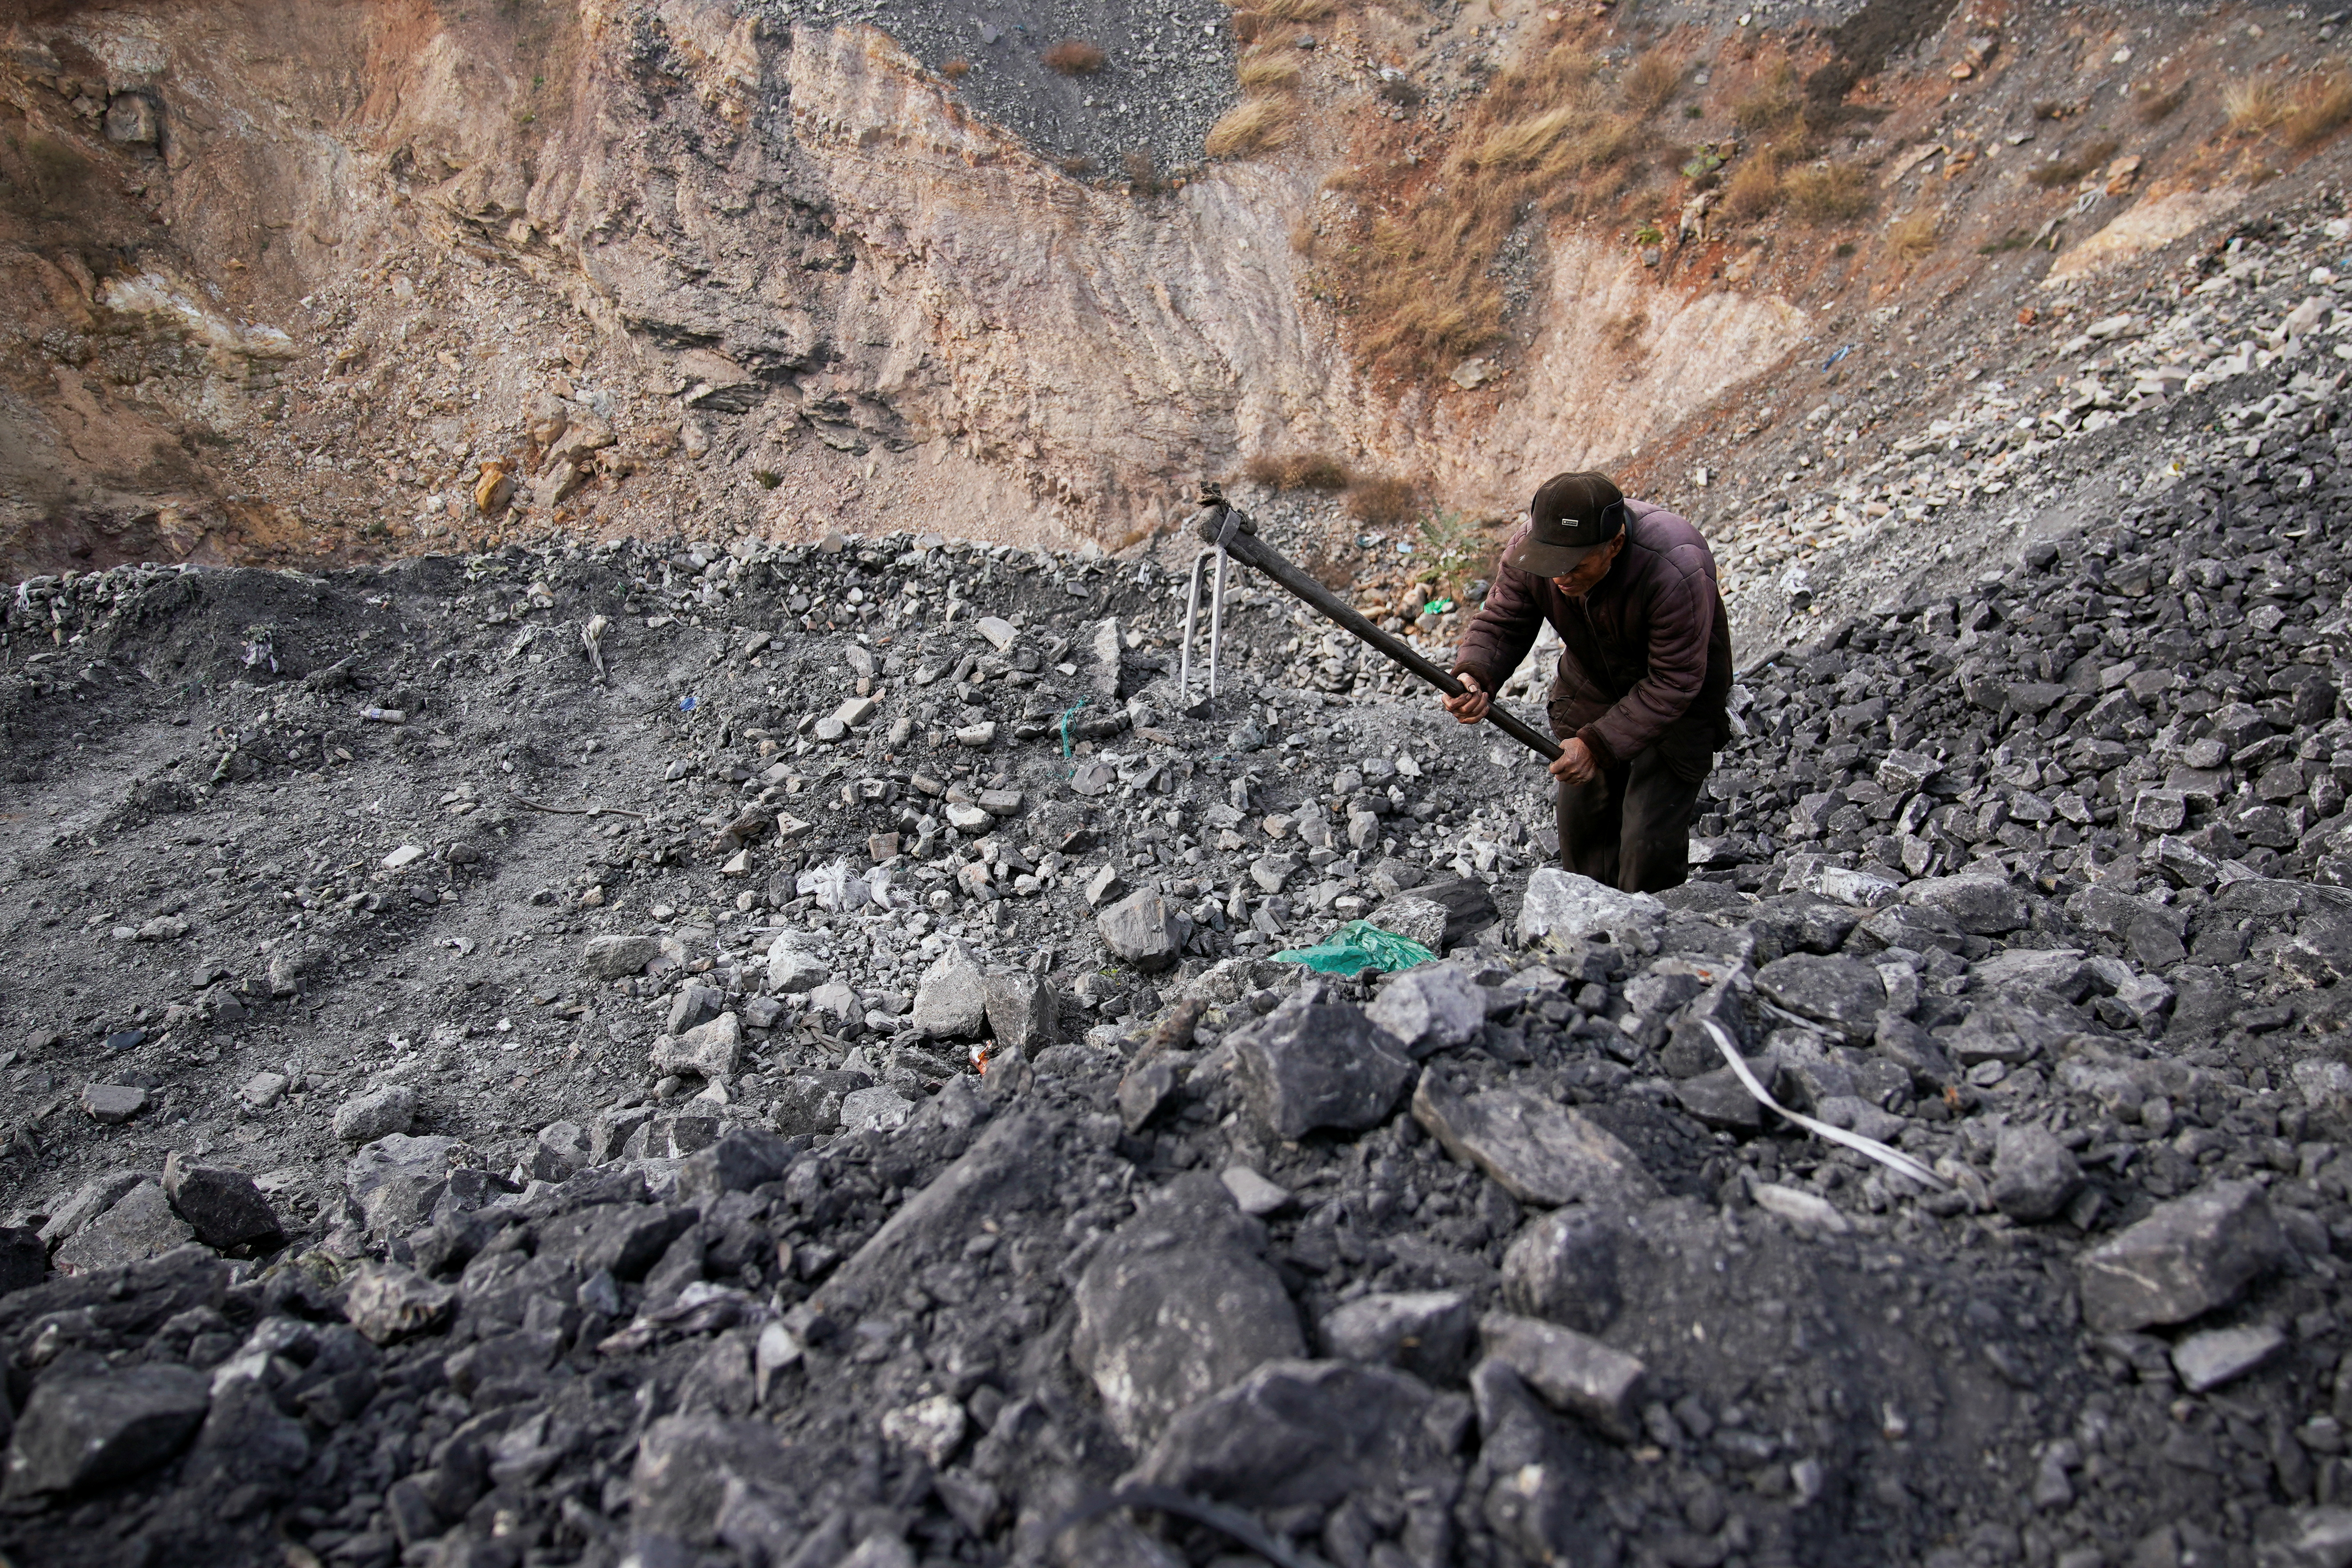 Zhang Tieliang 76, sifts through dunes of low-grade coal near a coal mine in Ruzhou